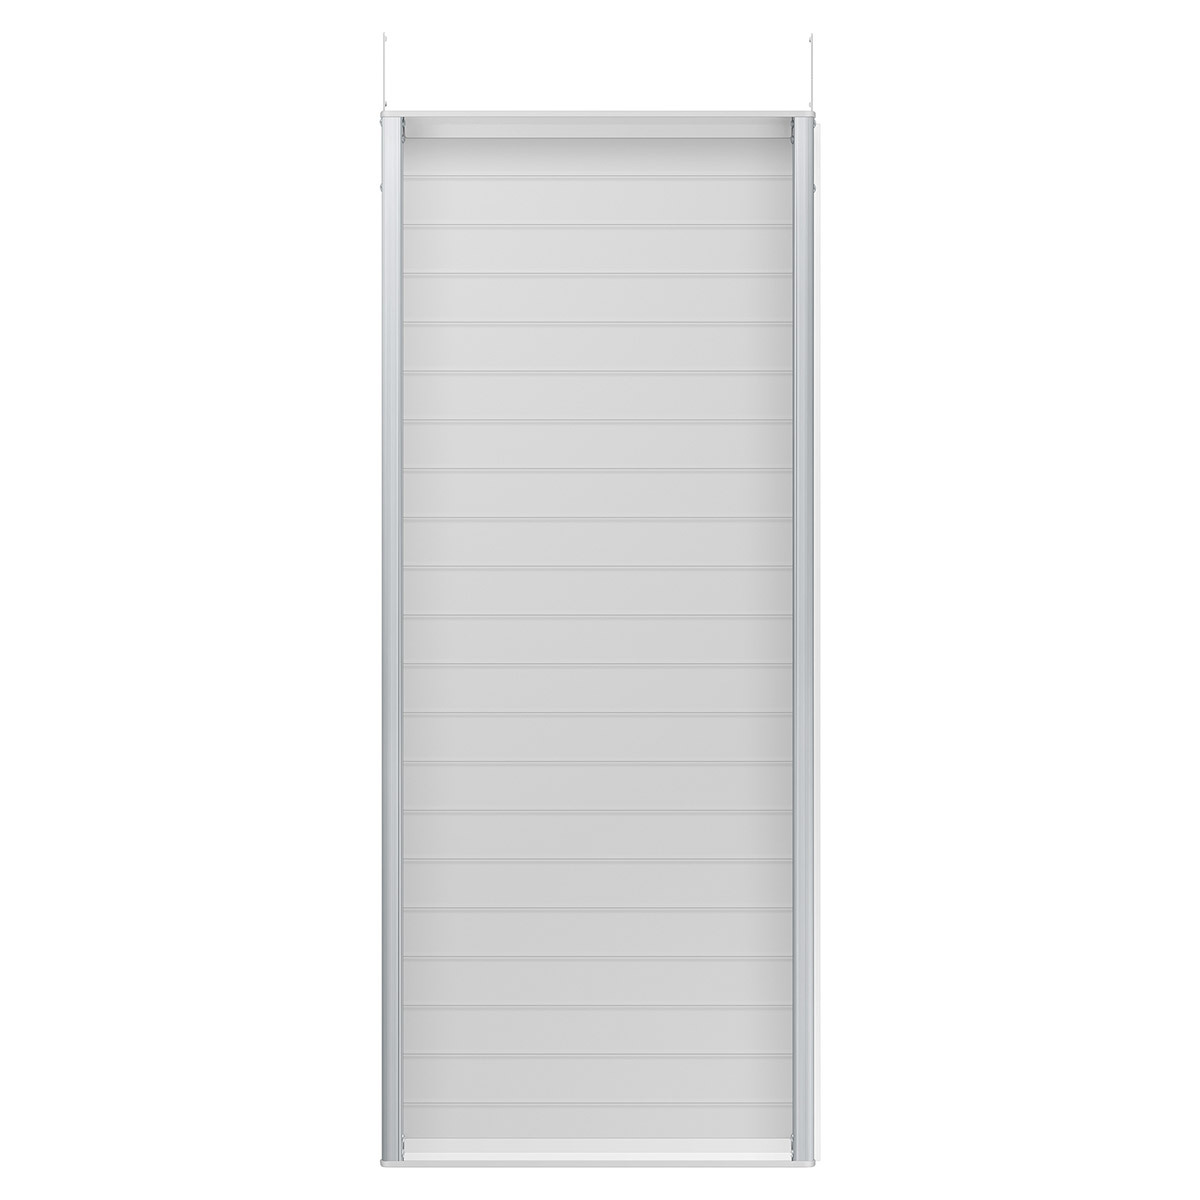 삼성 무풍 창문형 에어컨 매립형 (19.2㎡) + 연장 키트 (105cm)